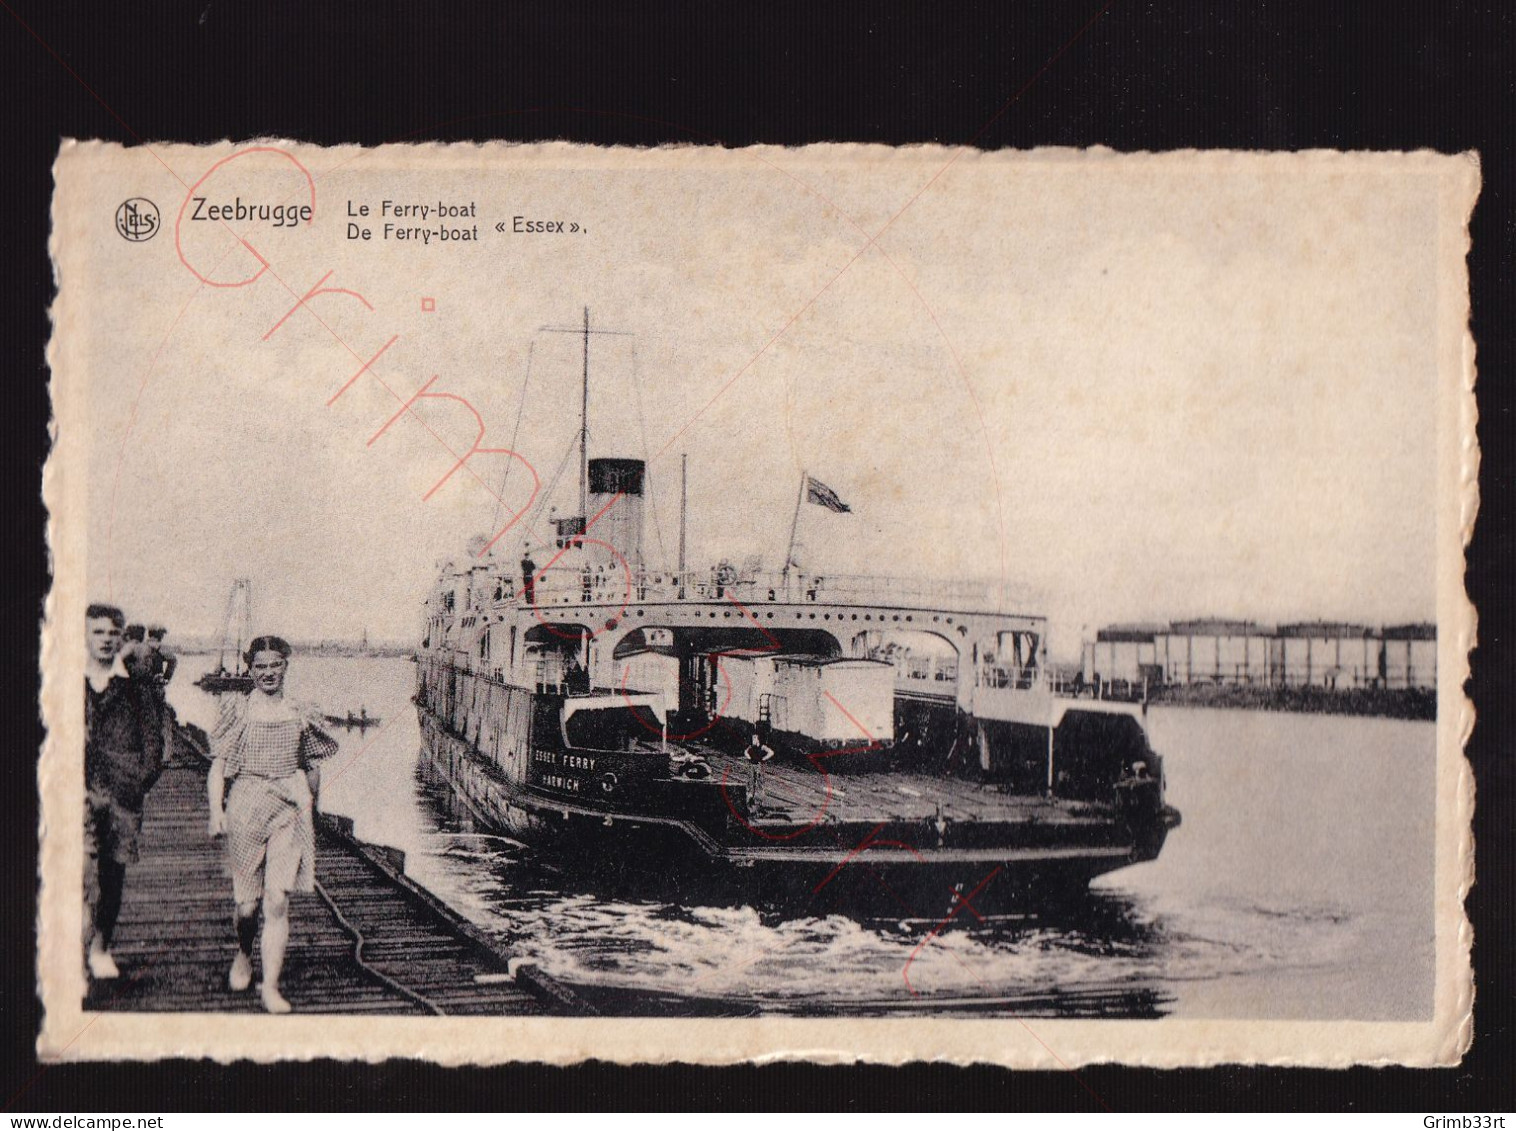 Zeebrugge - Le Ferry-boat "Essex" - Postkaart - Zeebrugge